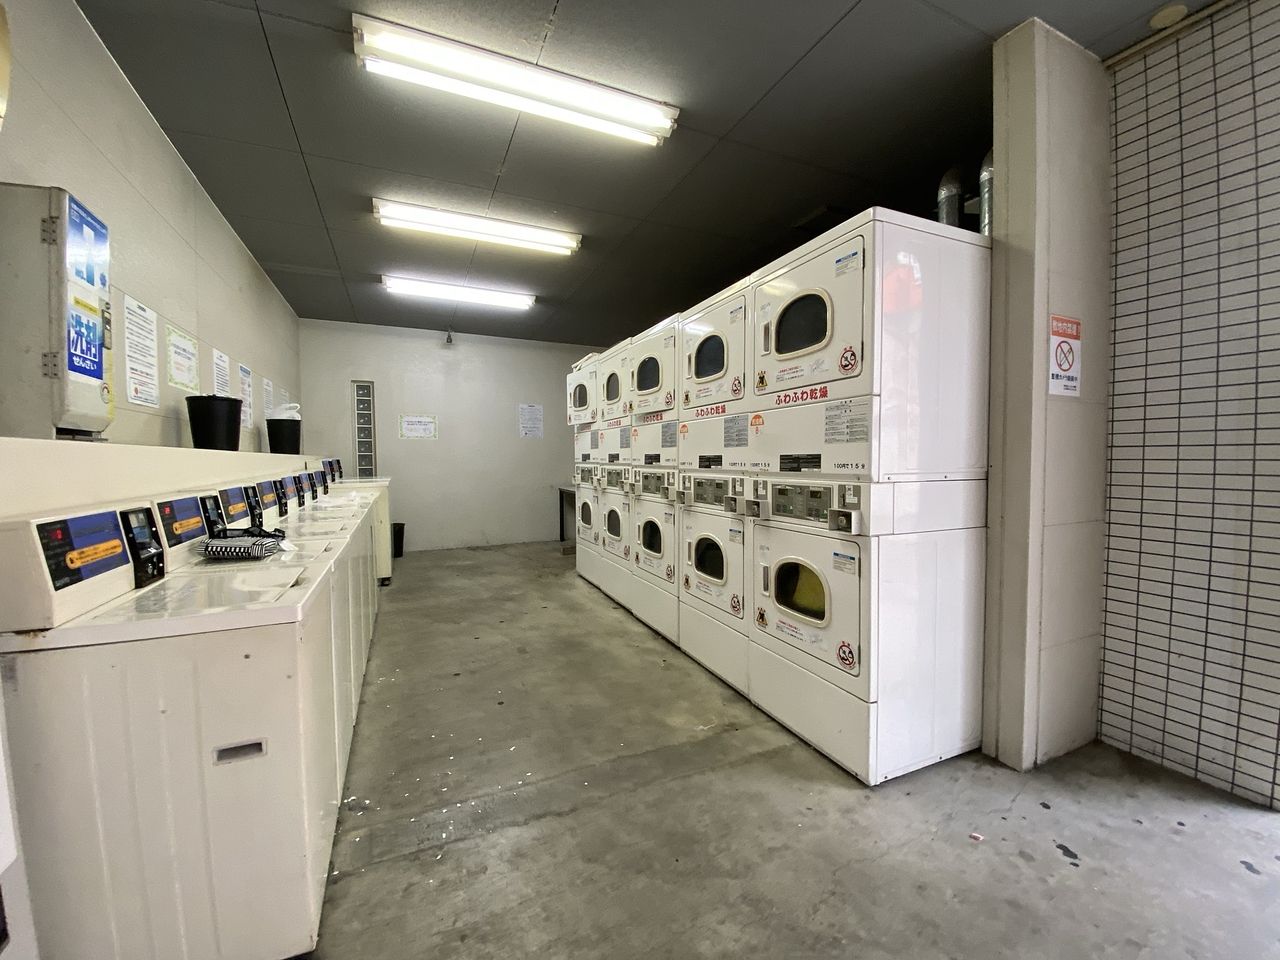 コインランドリーの洗濯機と乾燥機